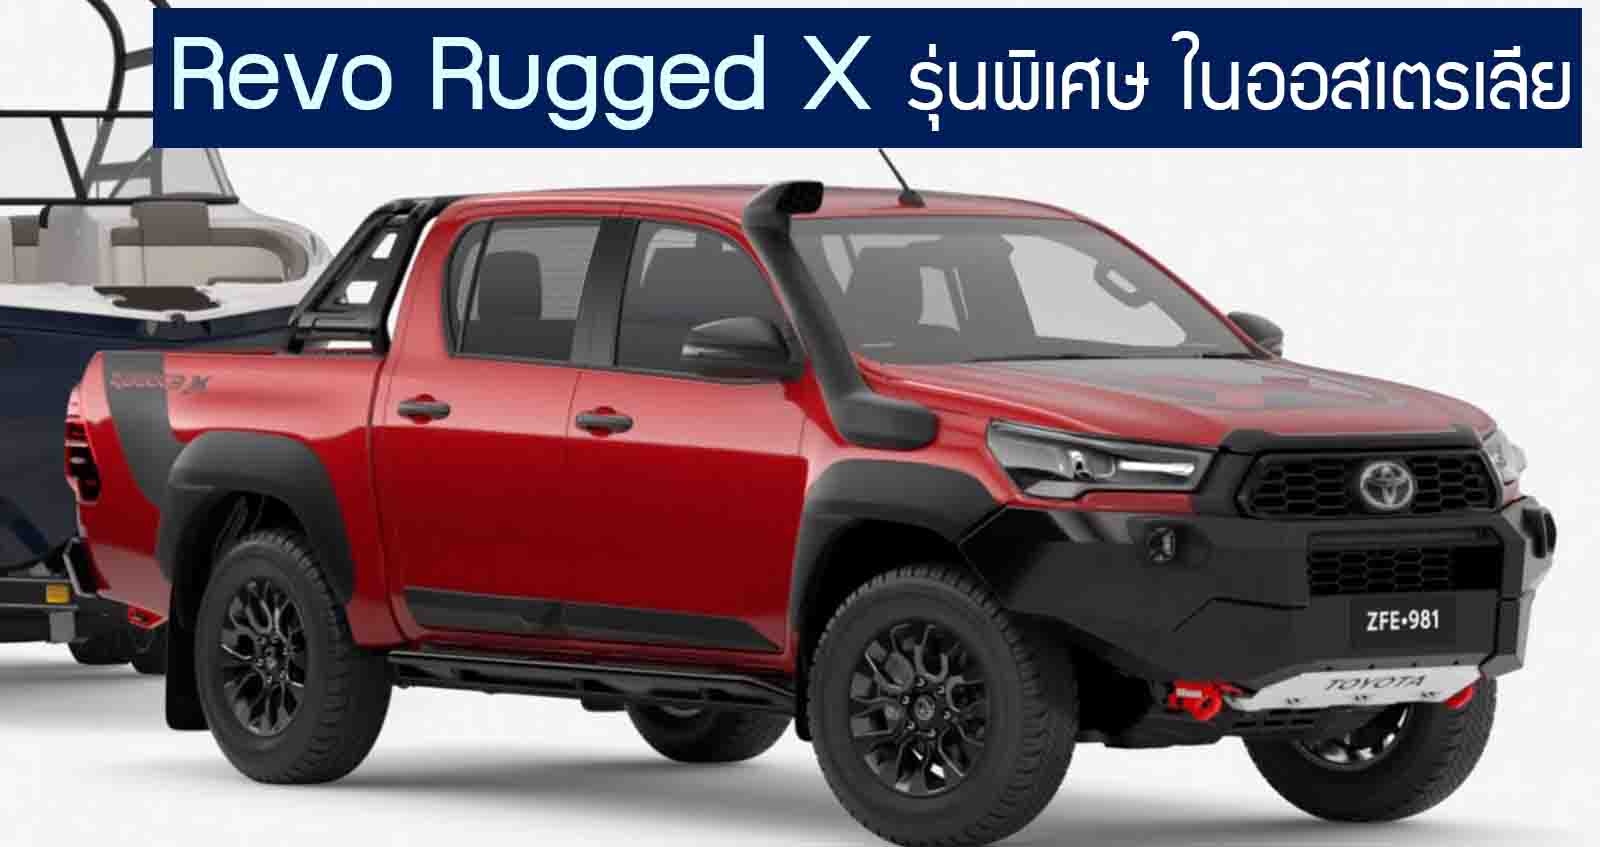 Toyota Hilux Revo Rugged X รุ่นแต่งพิเศษ เอาใจสายลุย ในออสเตรเลีย